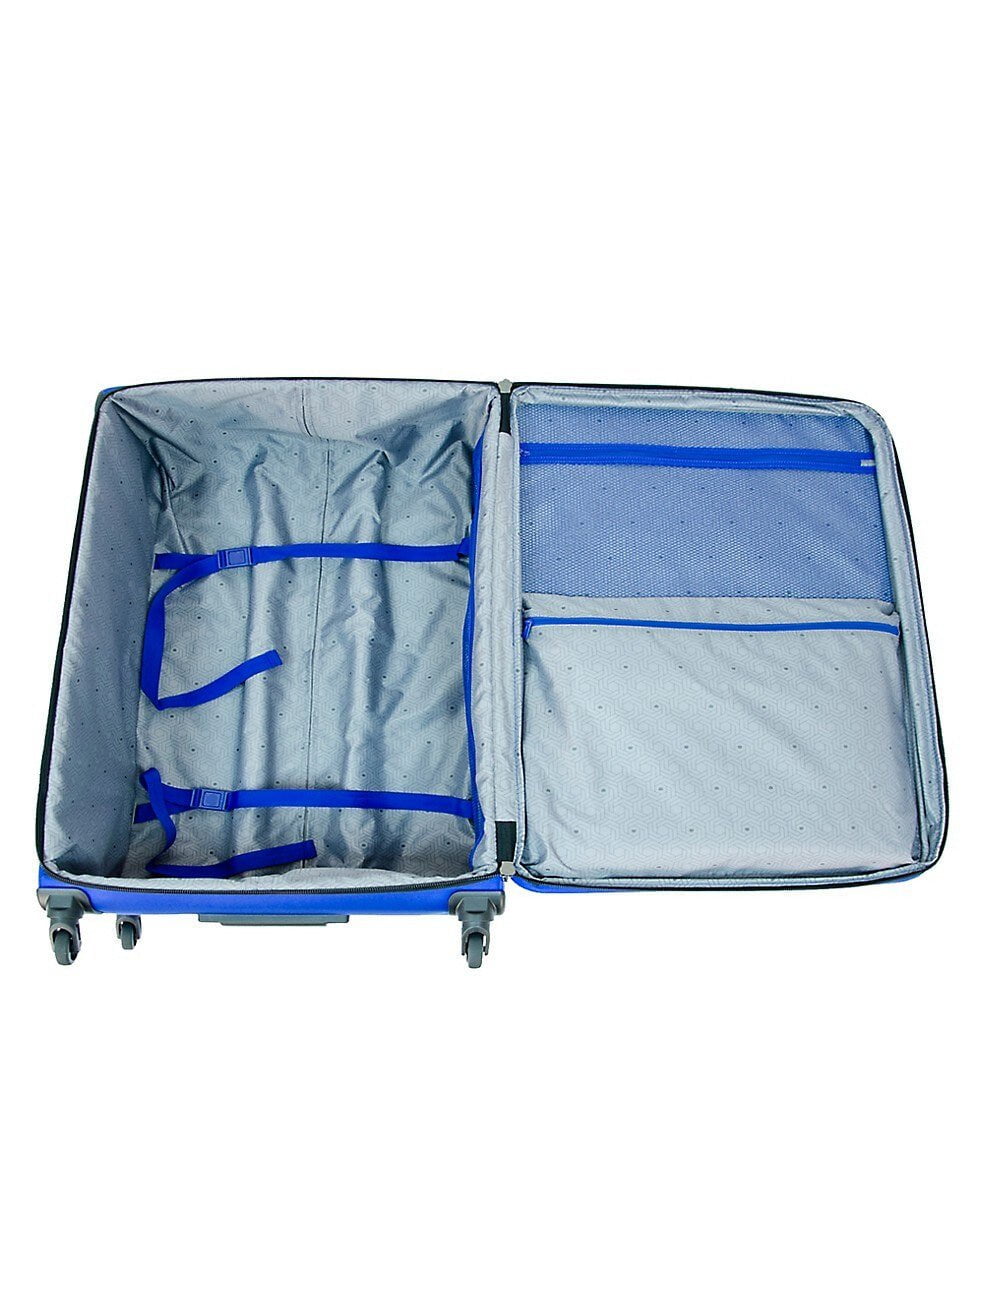 Delsey Optima Softside Medium Luggage